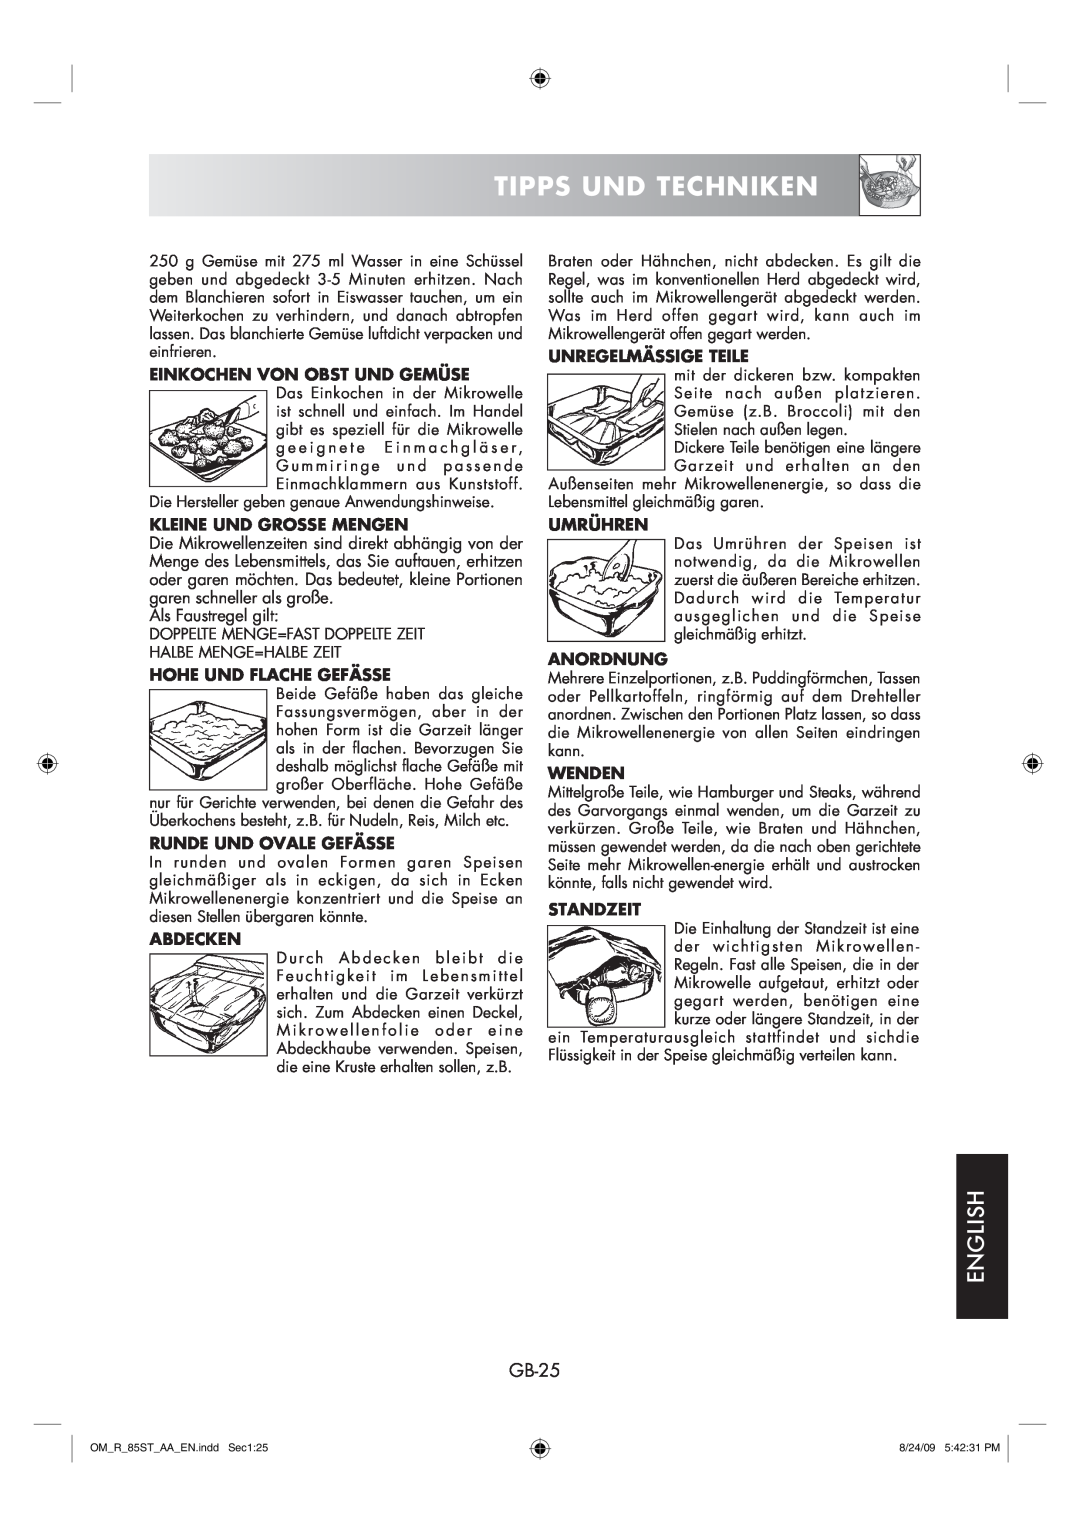 Sharp R-85ST-AA operation manual Tipps Und Techniken, English, GB-25 